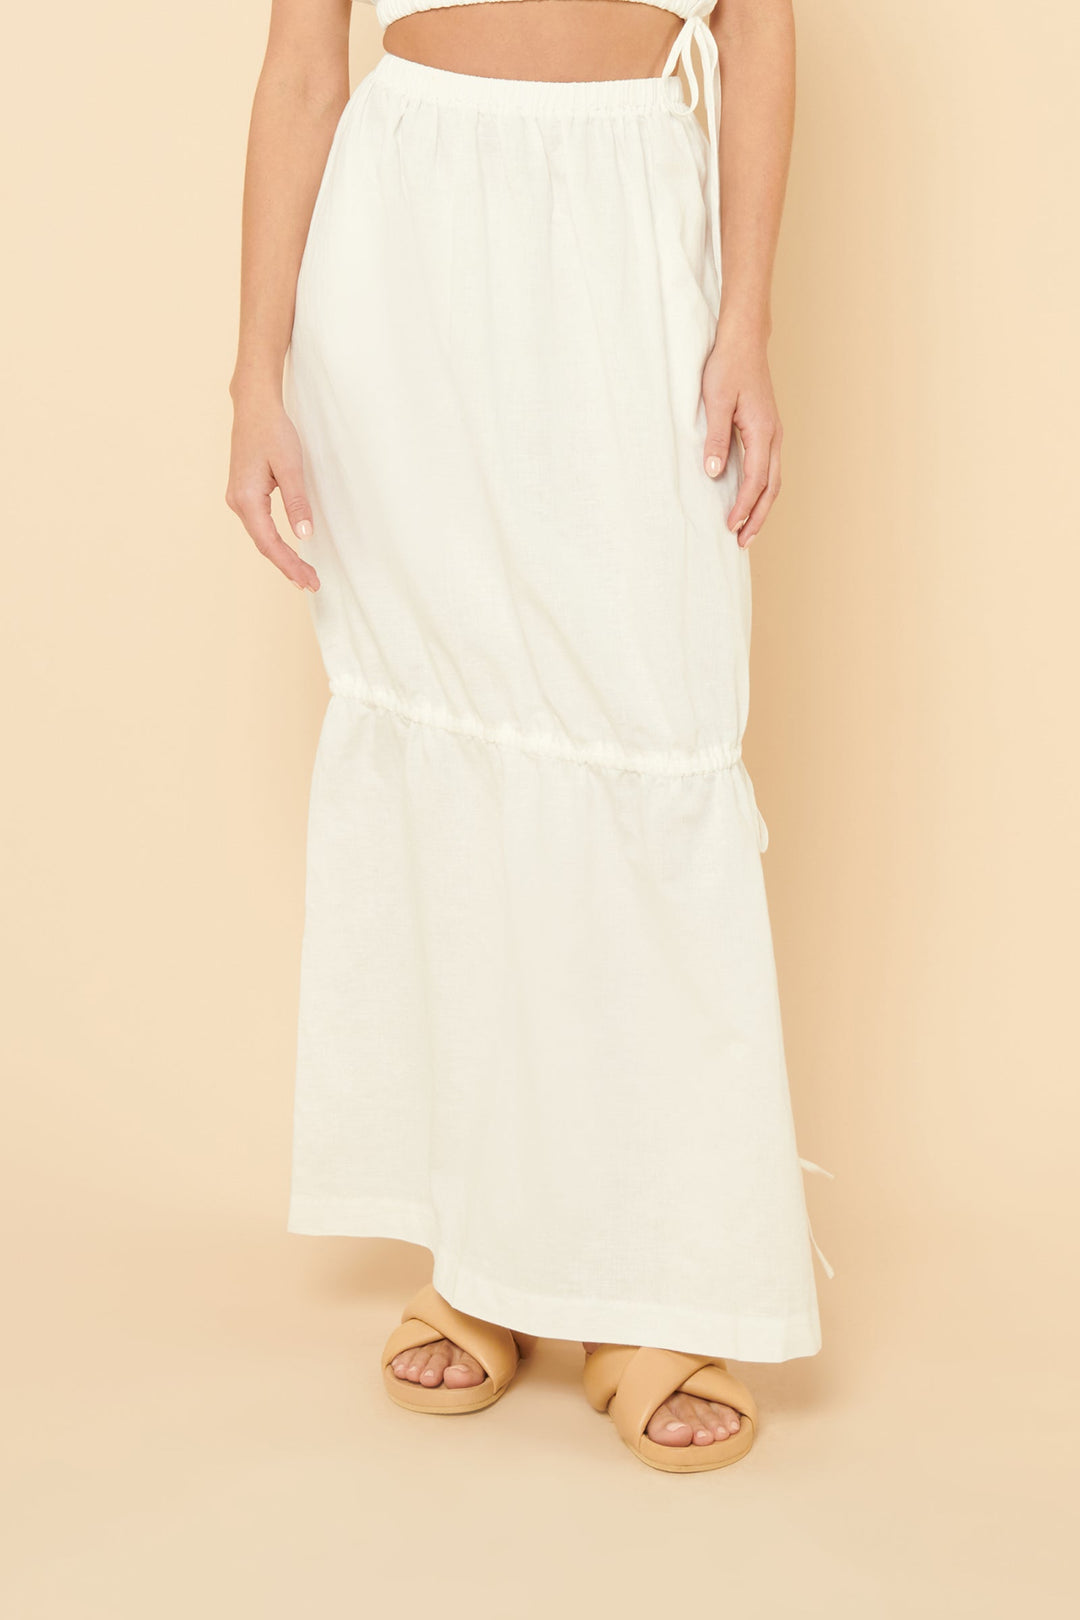 Brea Linen Maxi Skirt - White